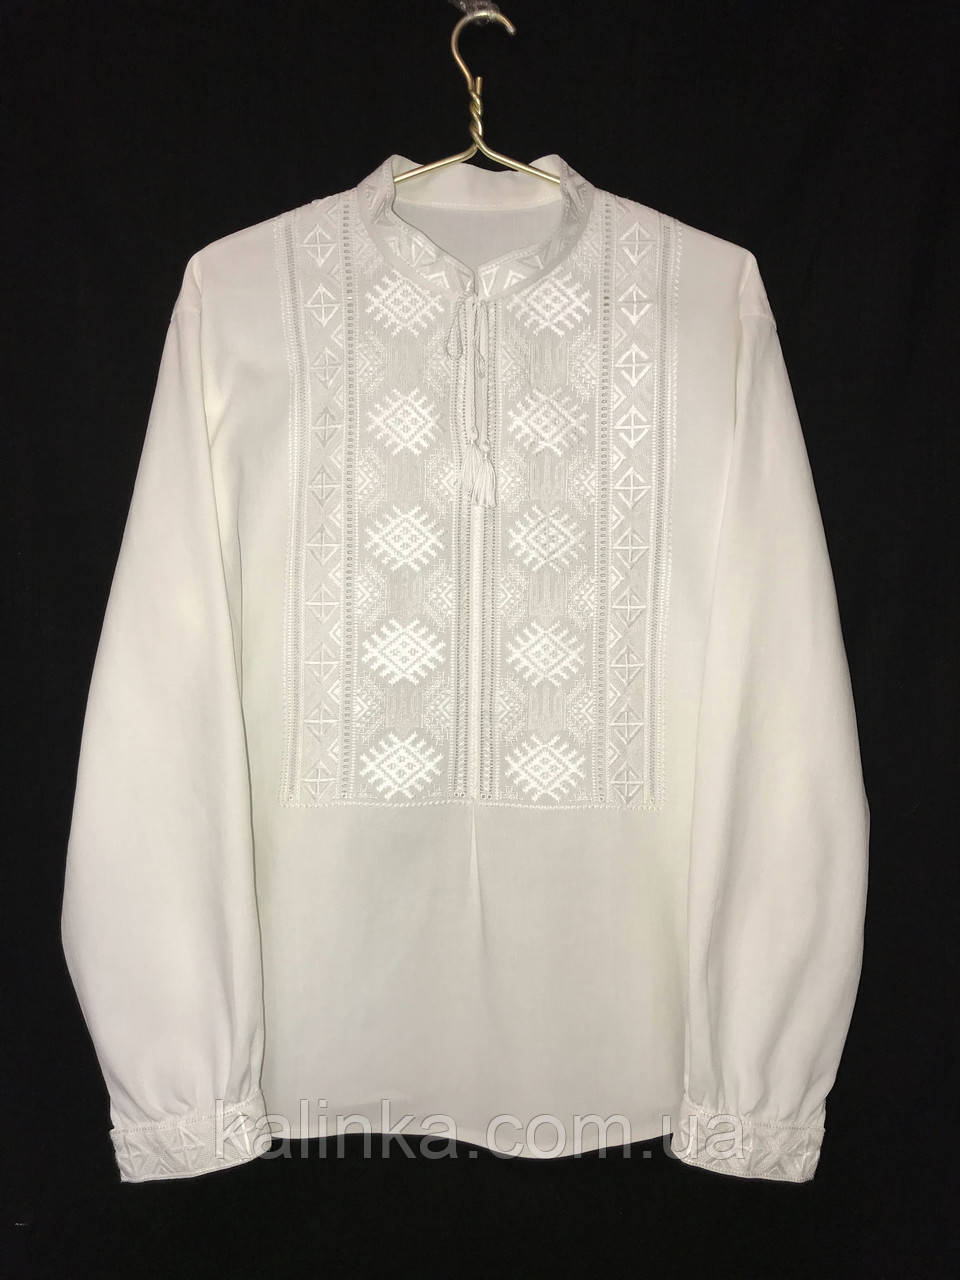 Сорочка вишиванка чоловіча біла Вишивка білим по білому Етнічна вишивка